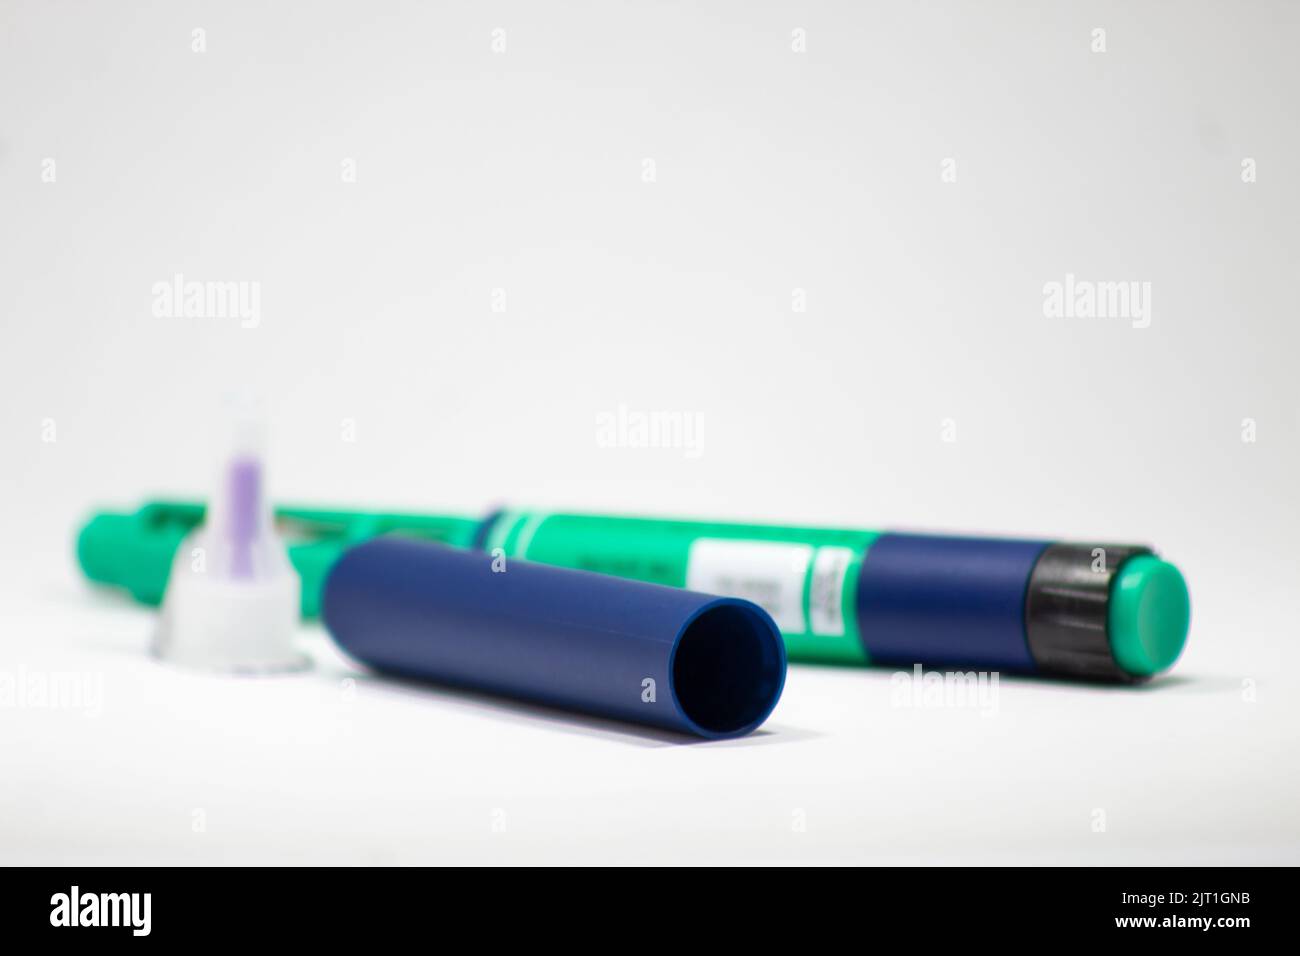 Bursa, Turquie - août 2022 : stylo d'insuline bleu et vert sur fond blanc isolé, insuline à action prolongée, pointe d'aiguille Banque D'Images